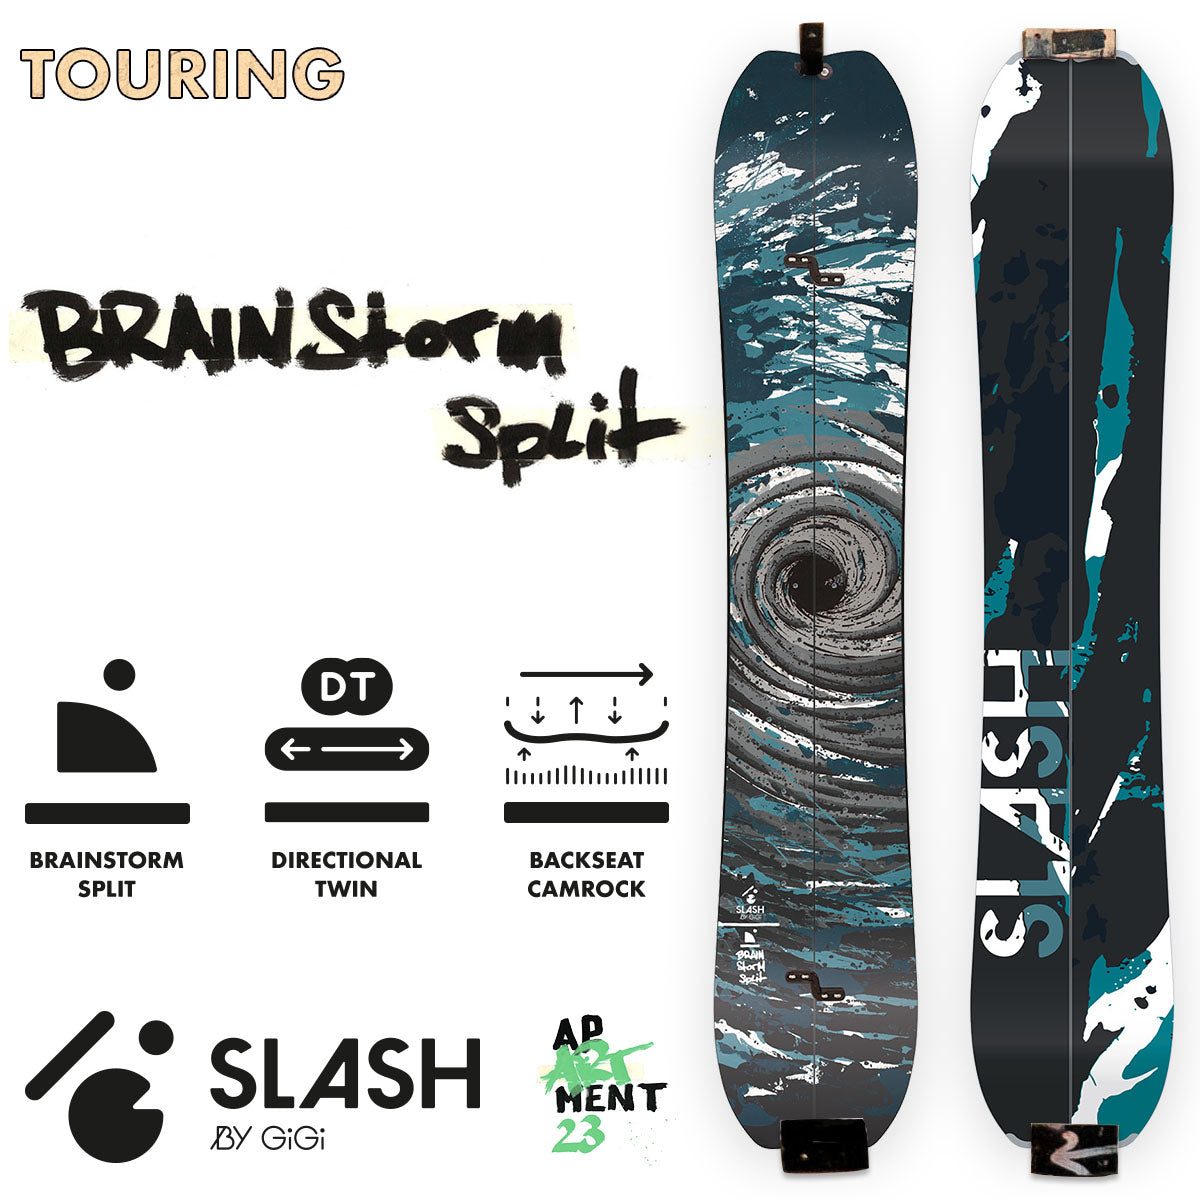 Slash by GiGi -  Brainstorm Split Snowboard